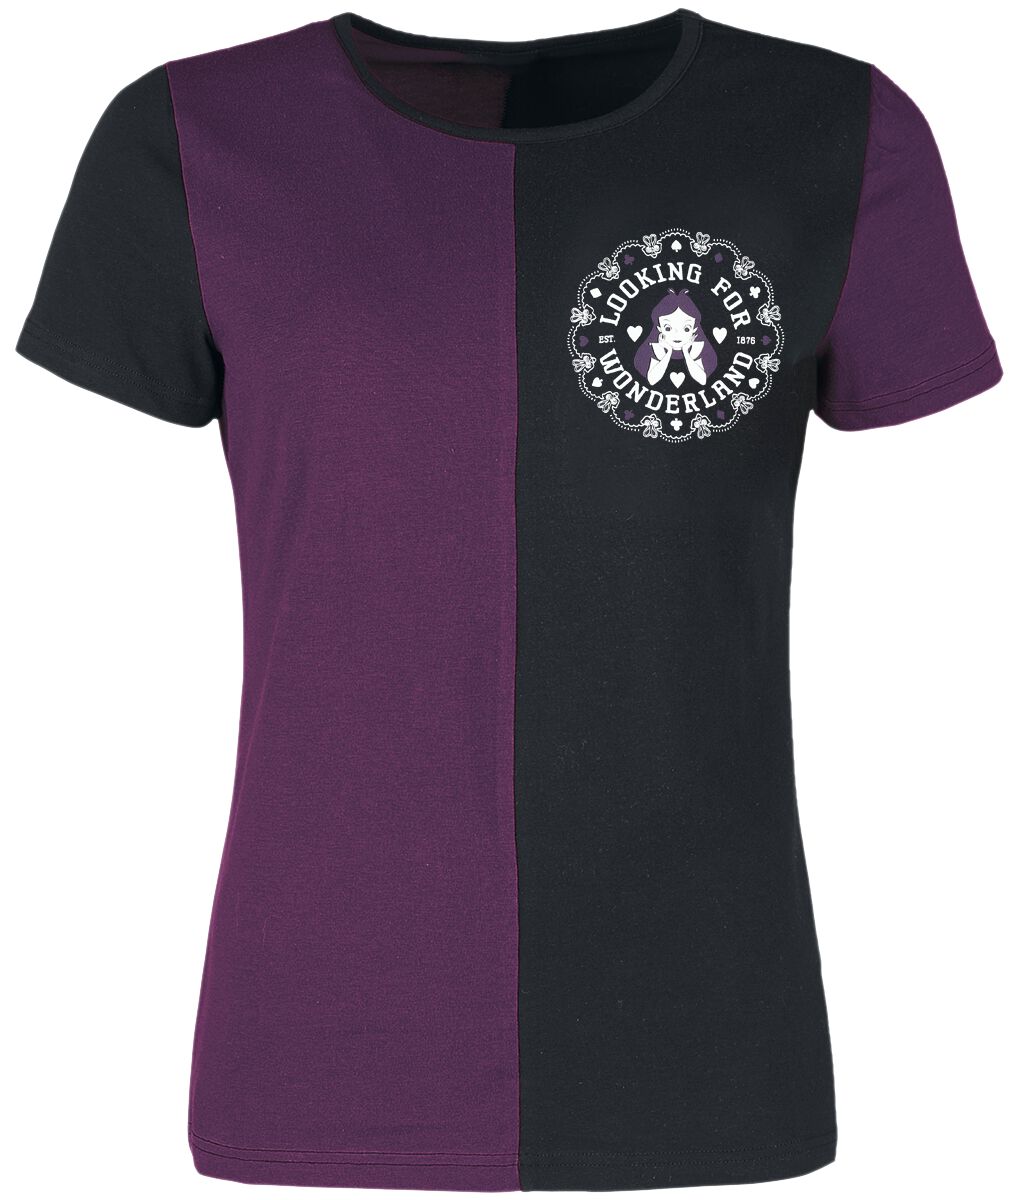 T-Shirt Manches courtes Disney de Alice Au Pays Des Merveilles - University - S à XXL - pour Femme -